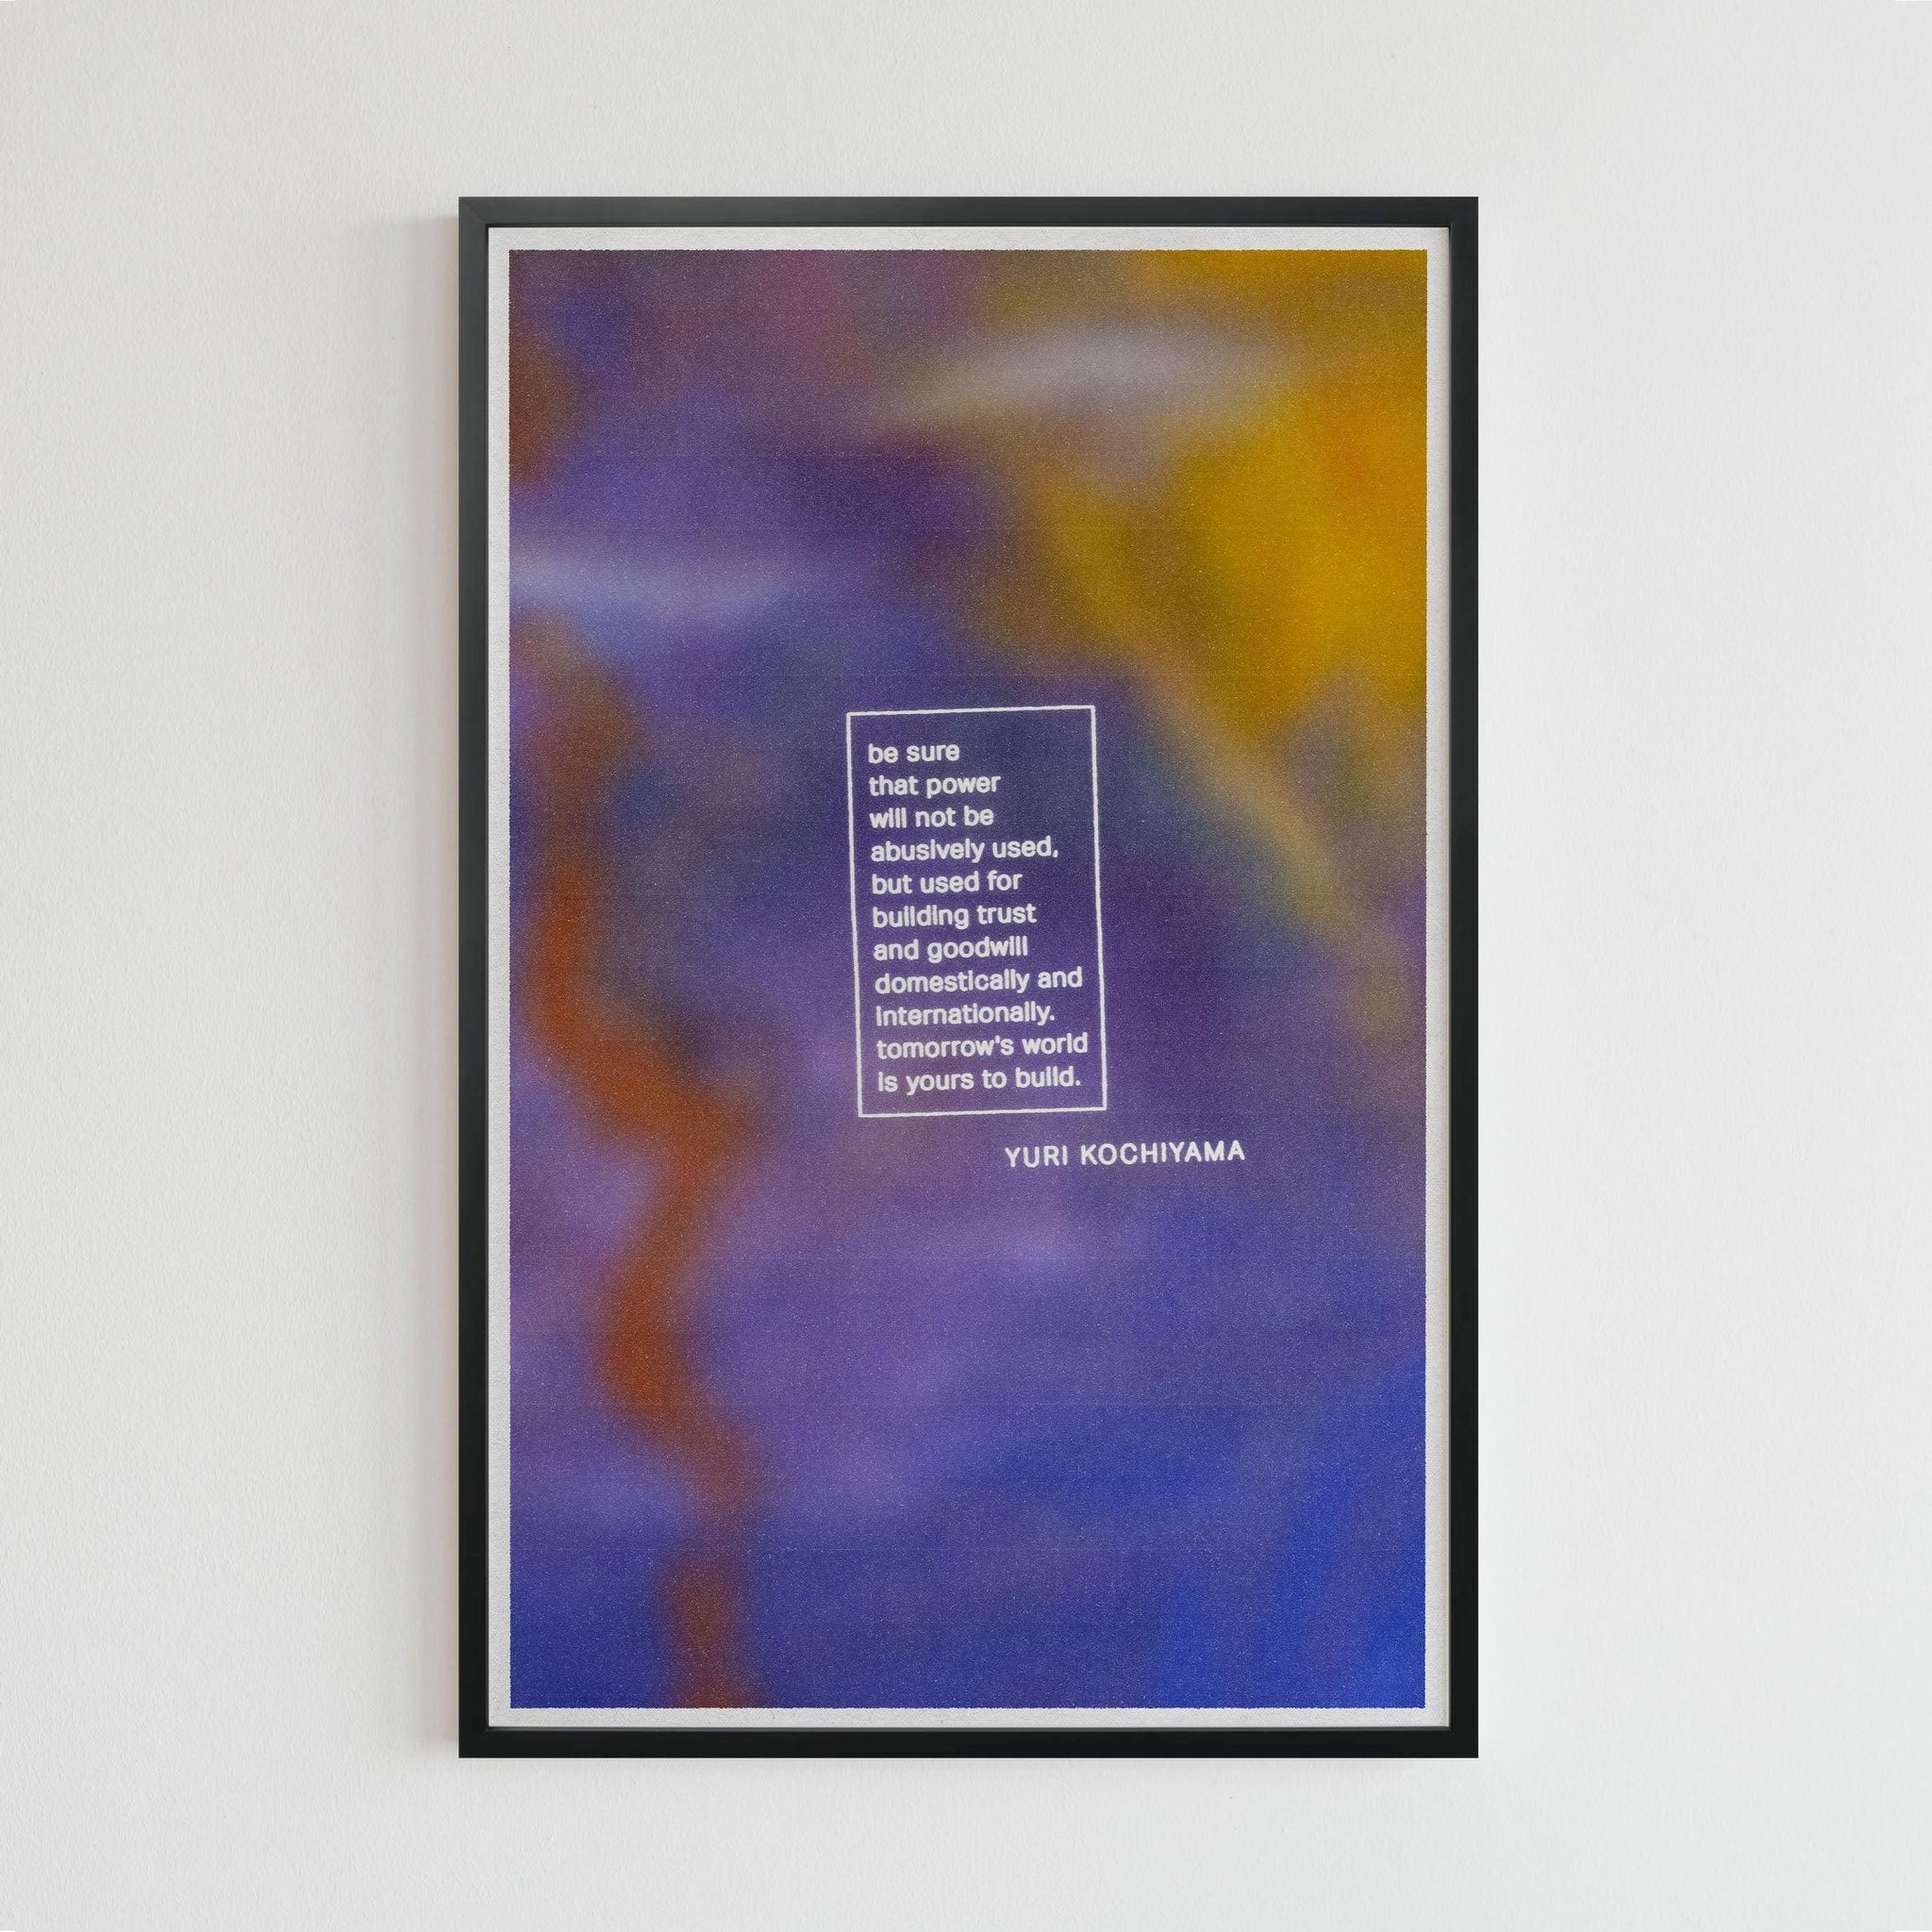 Yuri Kockiyama quote (11 x 17 Poster print) - Color Collective Press